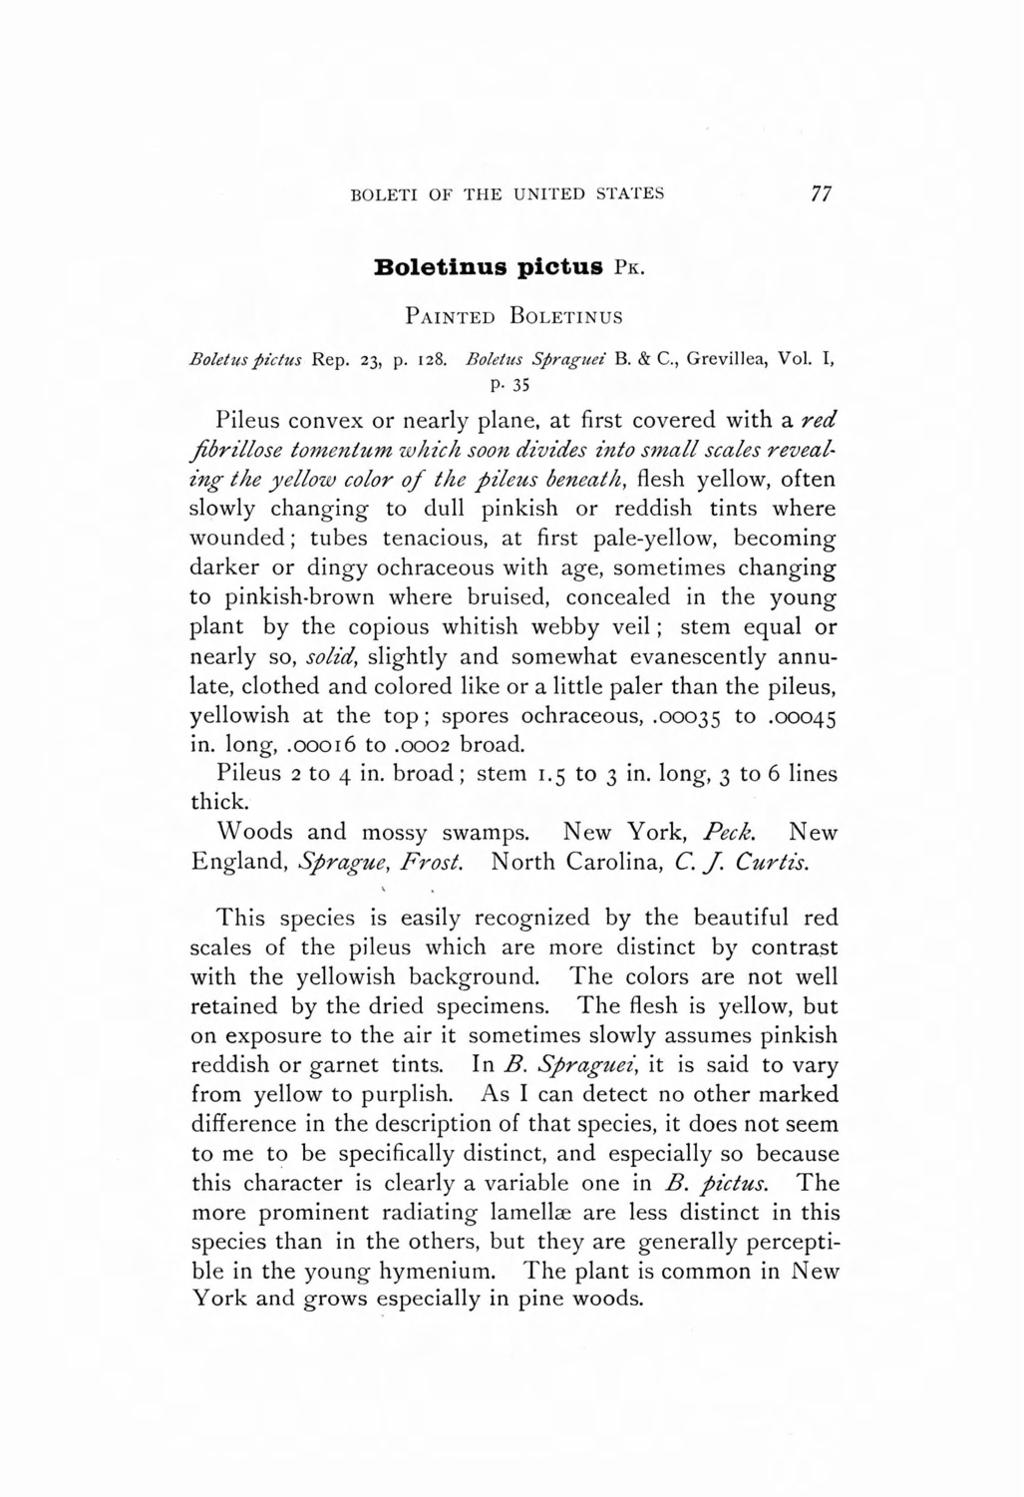 BOLETI OF THE UNITED STATES 77 Boletinus pictus PK. PAINTED BOLETINUS Boletus pic/us Rep. 23, p. 128. Boletus Spraguez" B. & c., Grevillea, Vol. I, p.